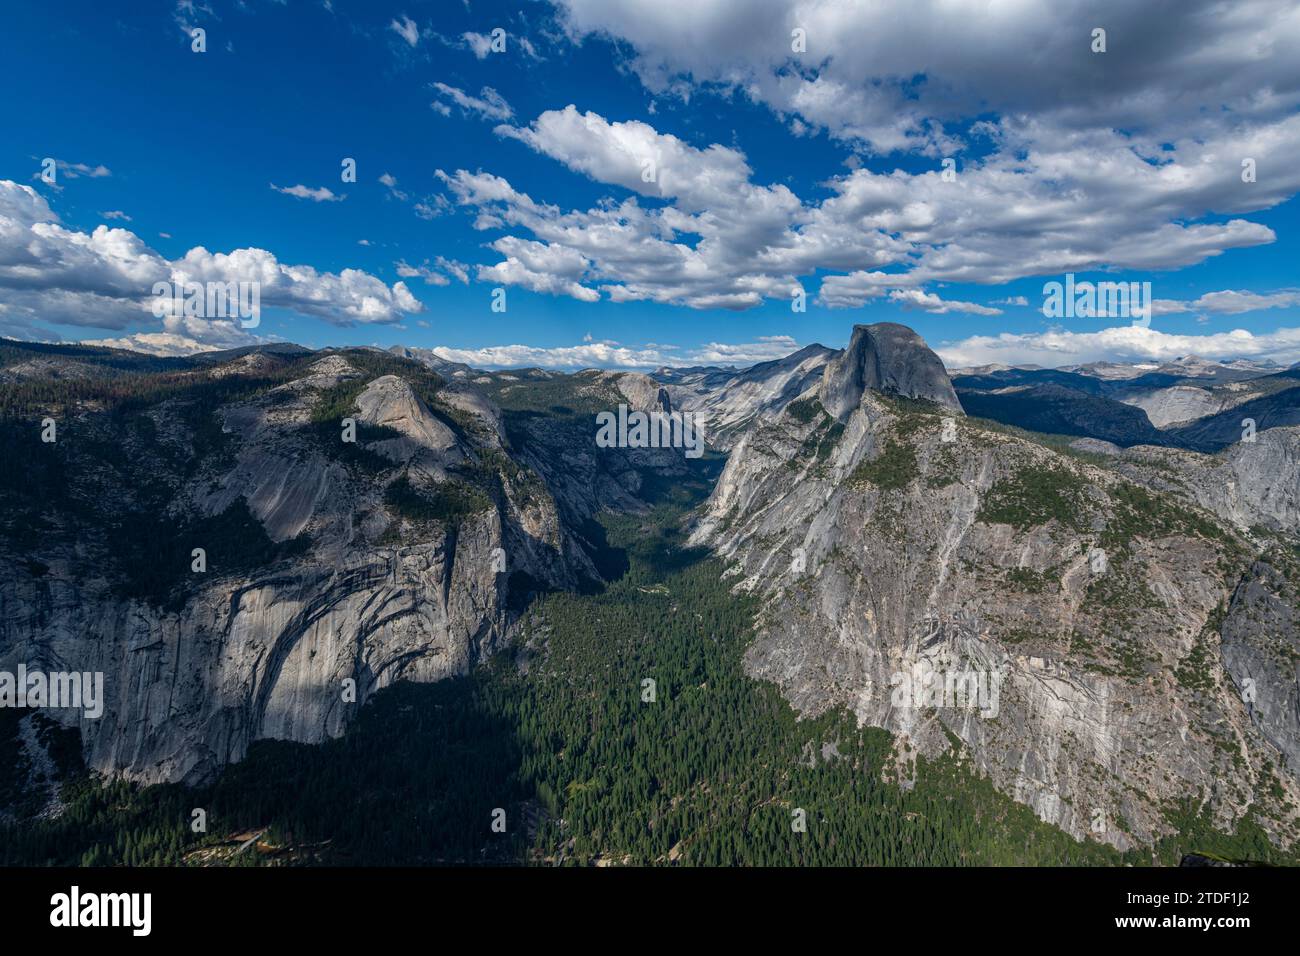 Vue sur le parc national Yosemite avec Half Dome, site du patrimoine mondial de l'UNESCO, Californie, États-Unis d'Amérique, Amérique du Nord Banque D'Images